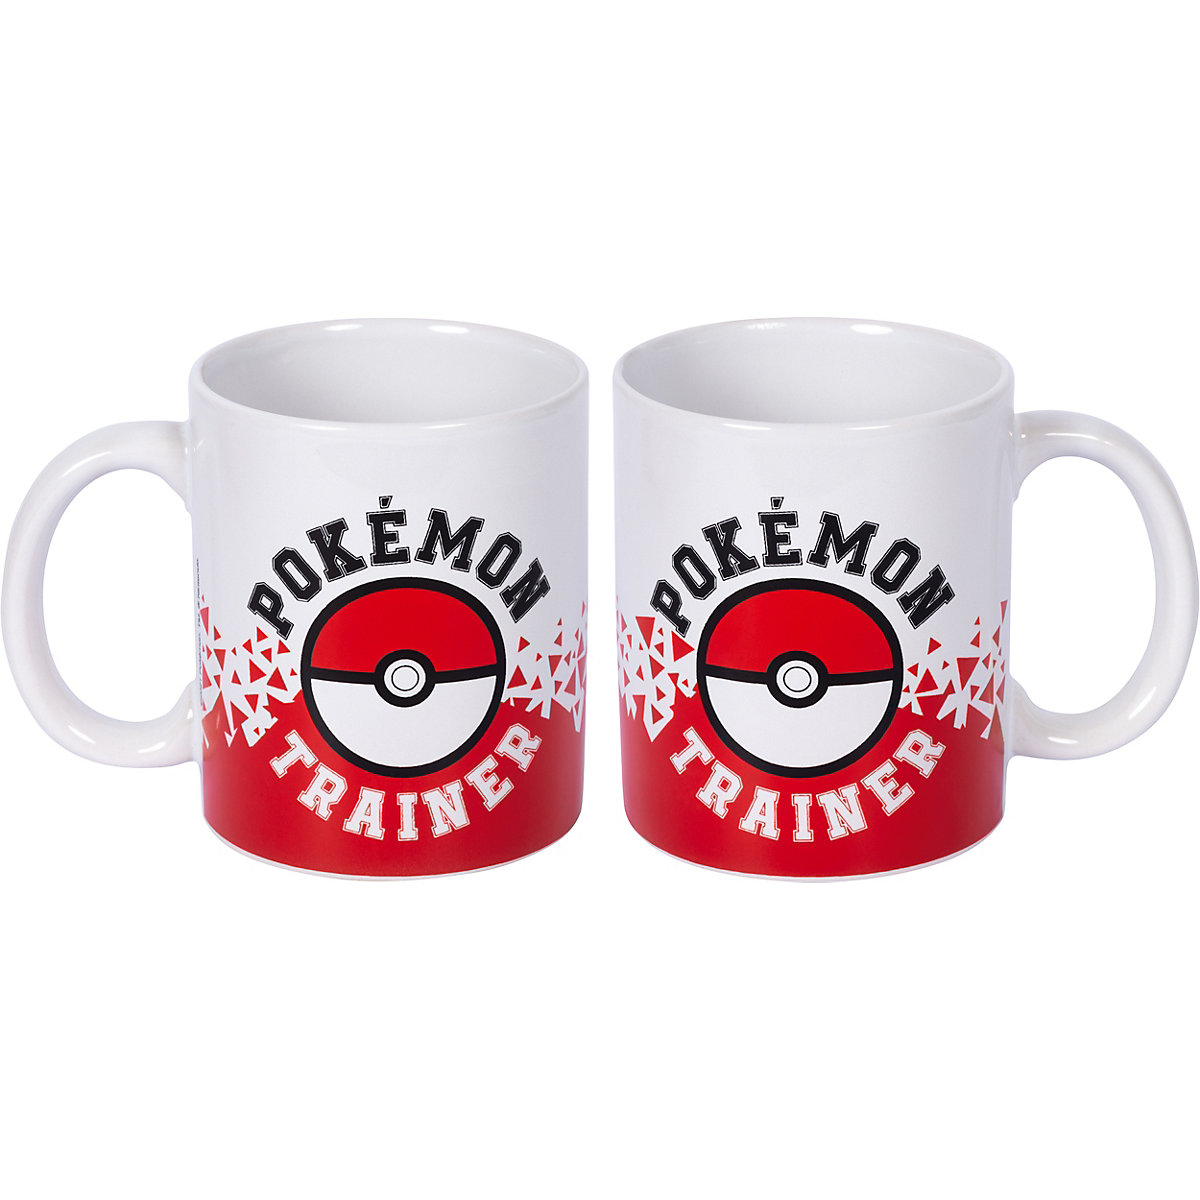 Keramik-Tasse Pokémon Trainer 2 325 ml